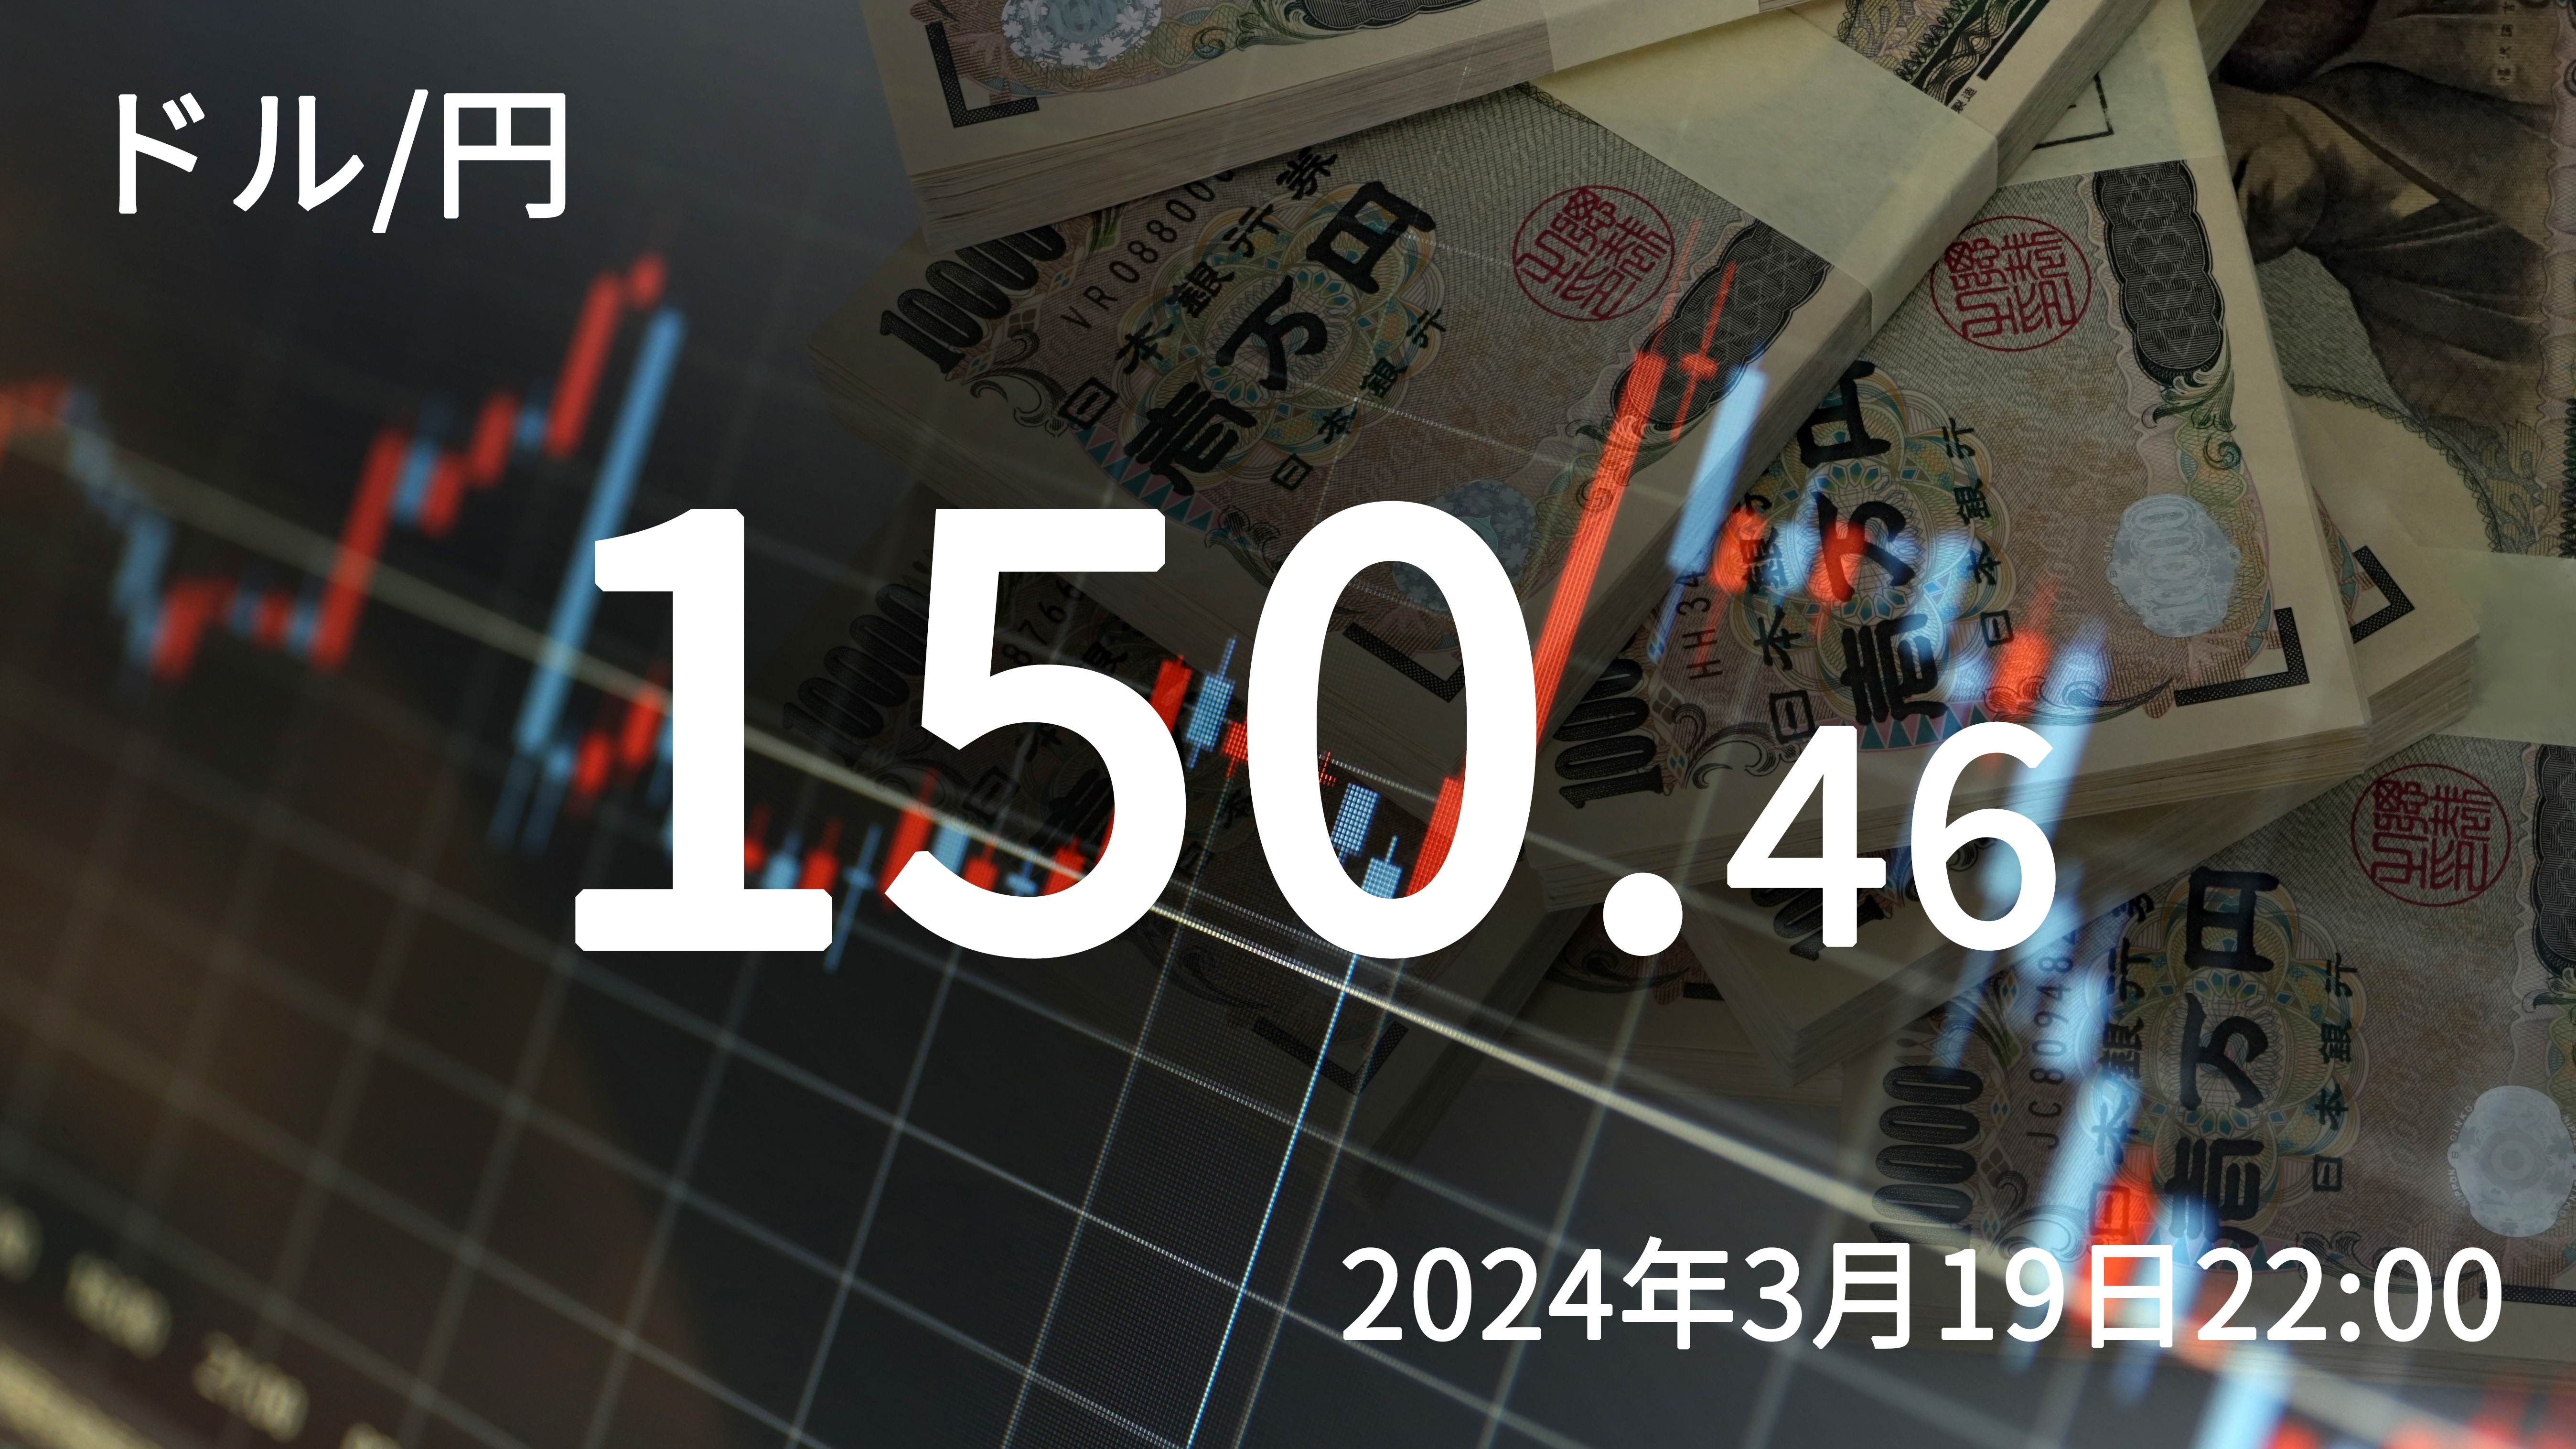 2024年3月19日22時ちょうど現在のドル円相場。150円台に再び下落した。